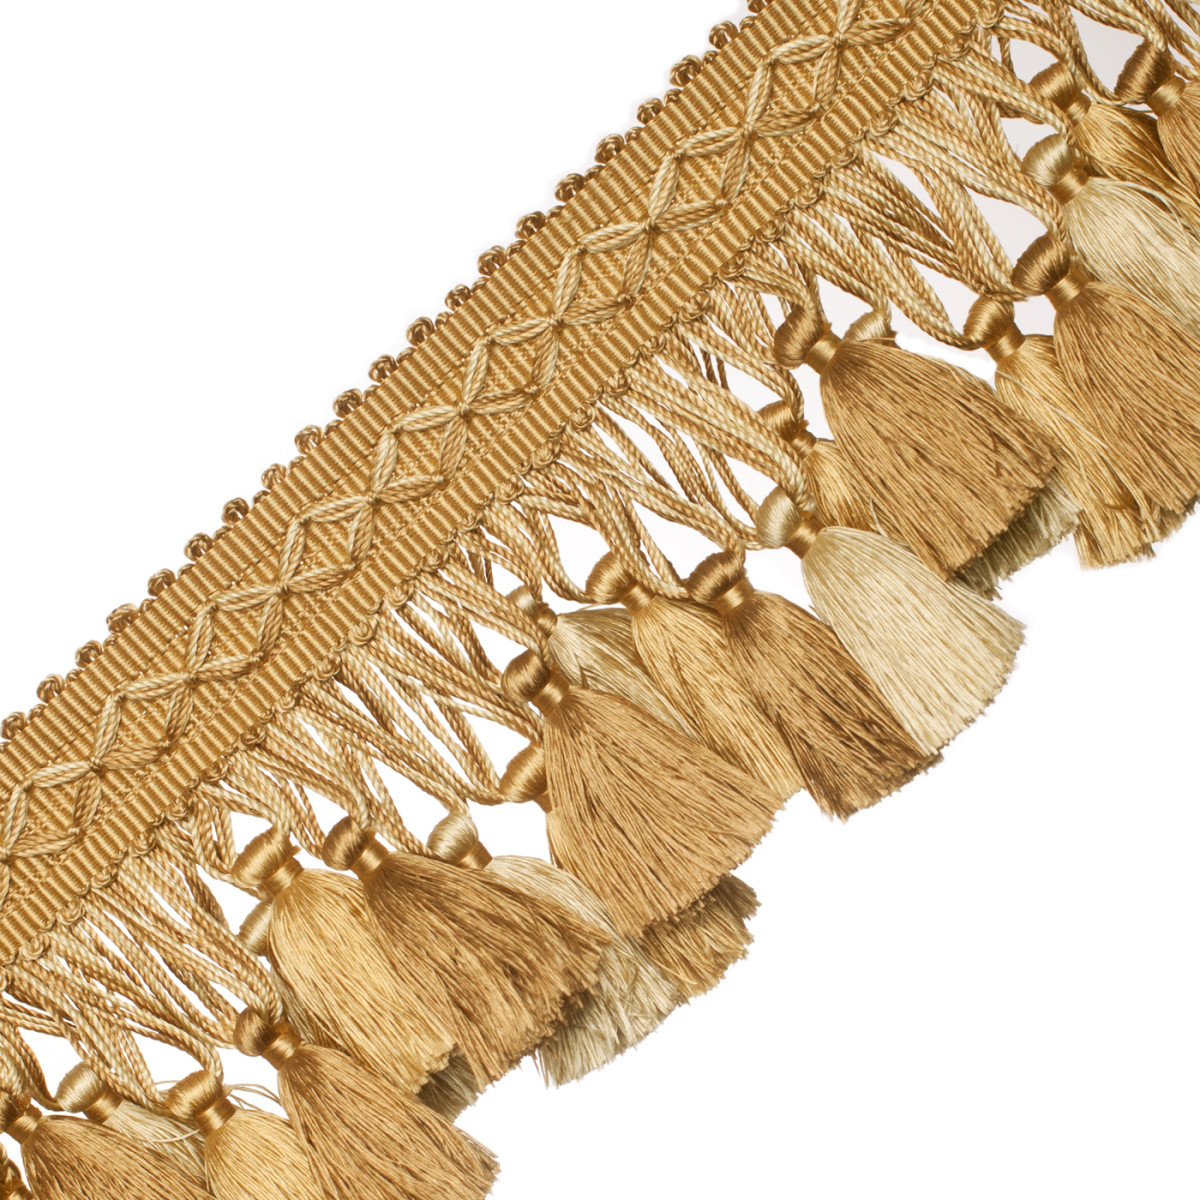 Double Tassel / Beige, WINE GOLD / Tassel Tie with 3.5 inch Tassels, B